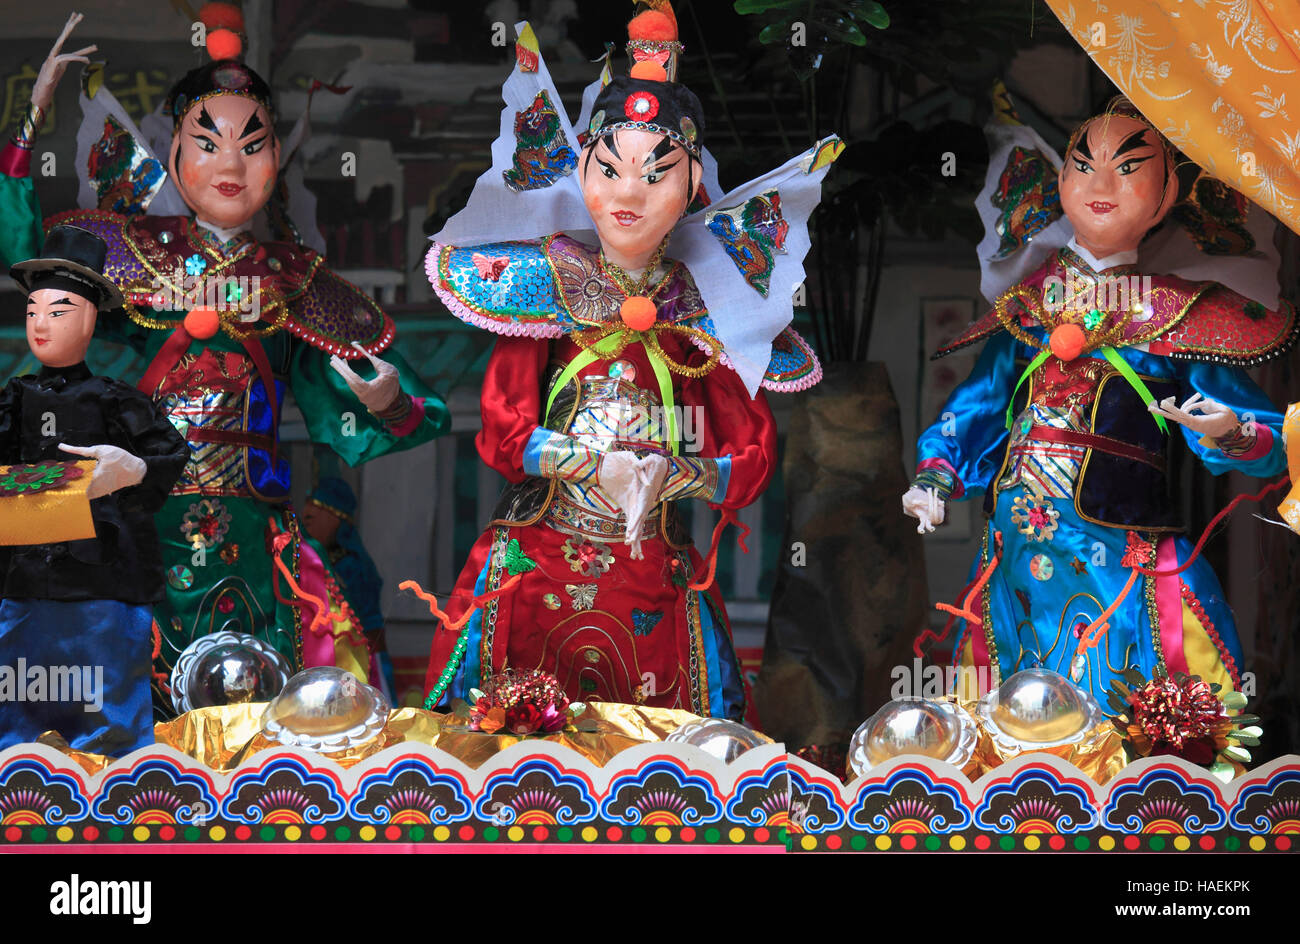 China, Hong Kong, Sheung Wan, Man Mo Temple, marionettes, Stock Photo